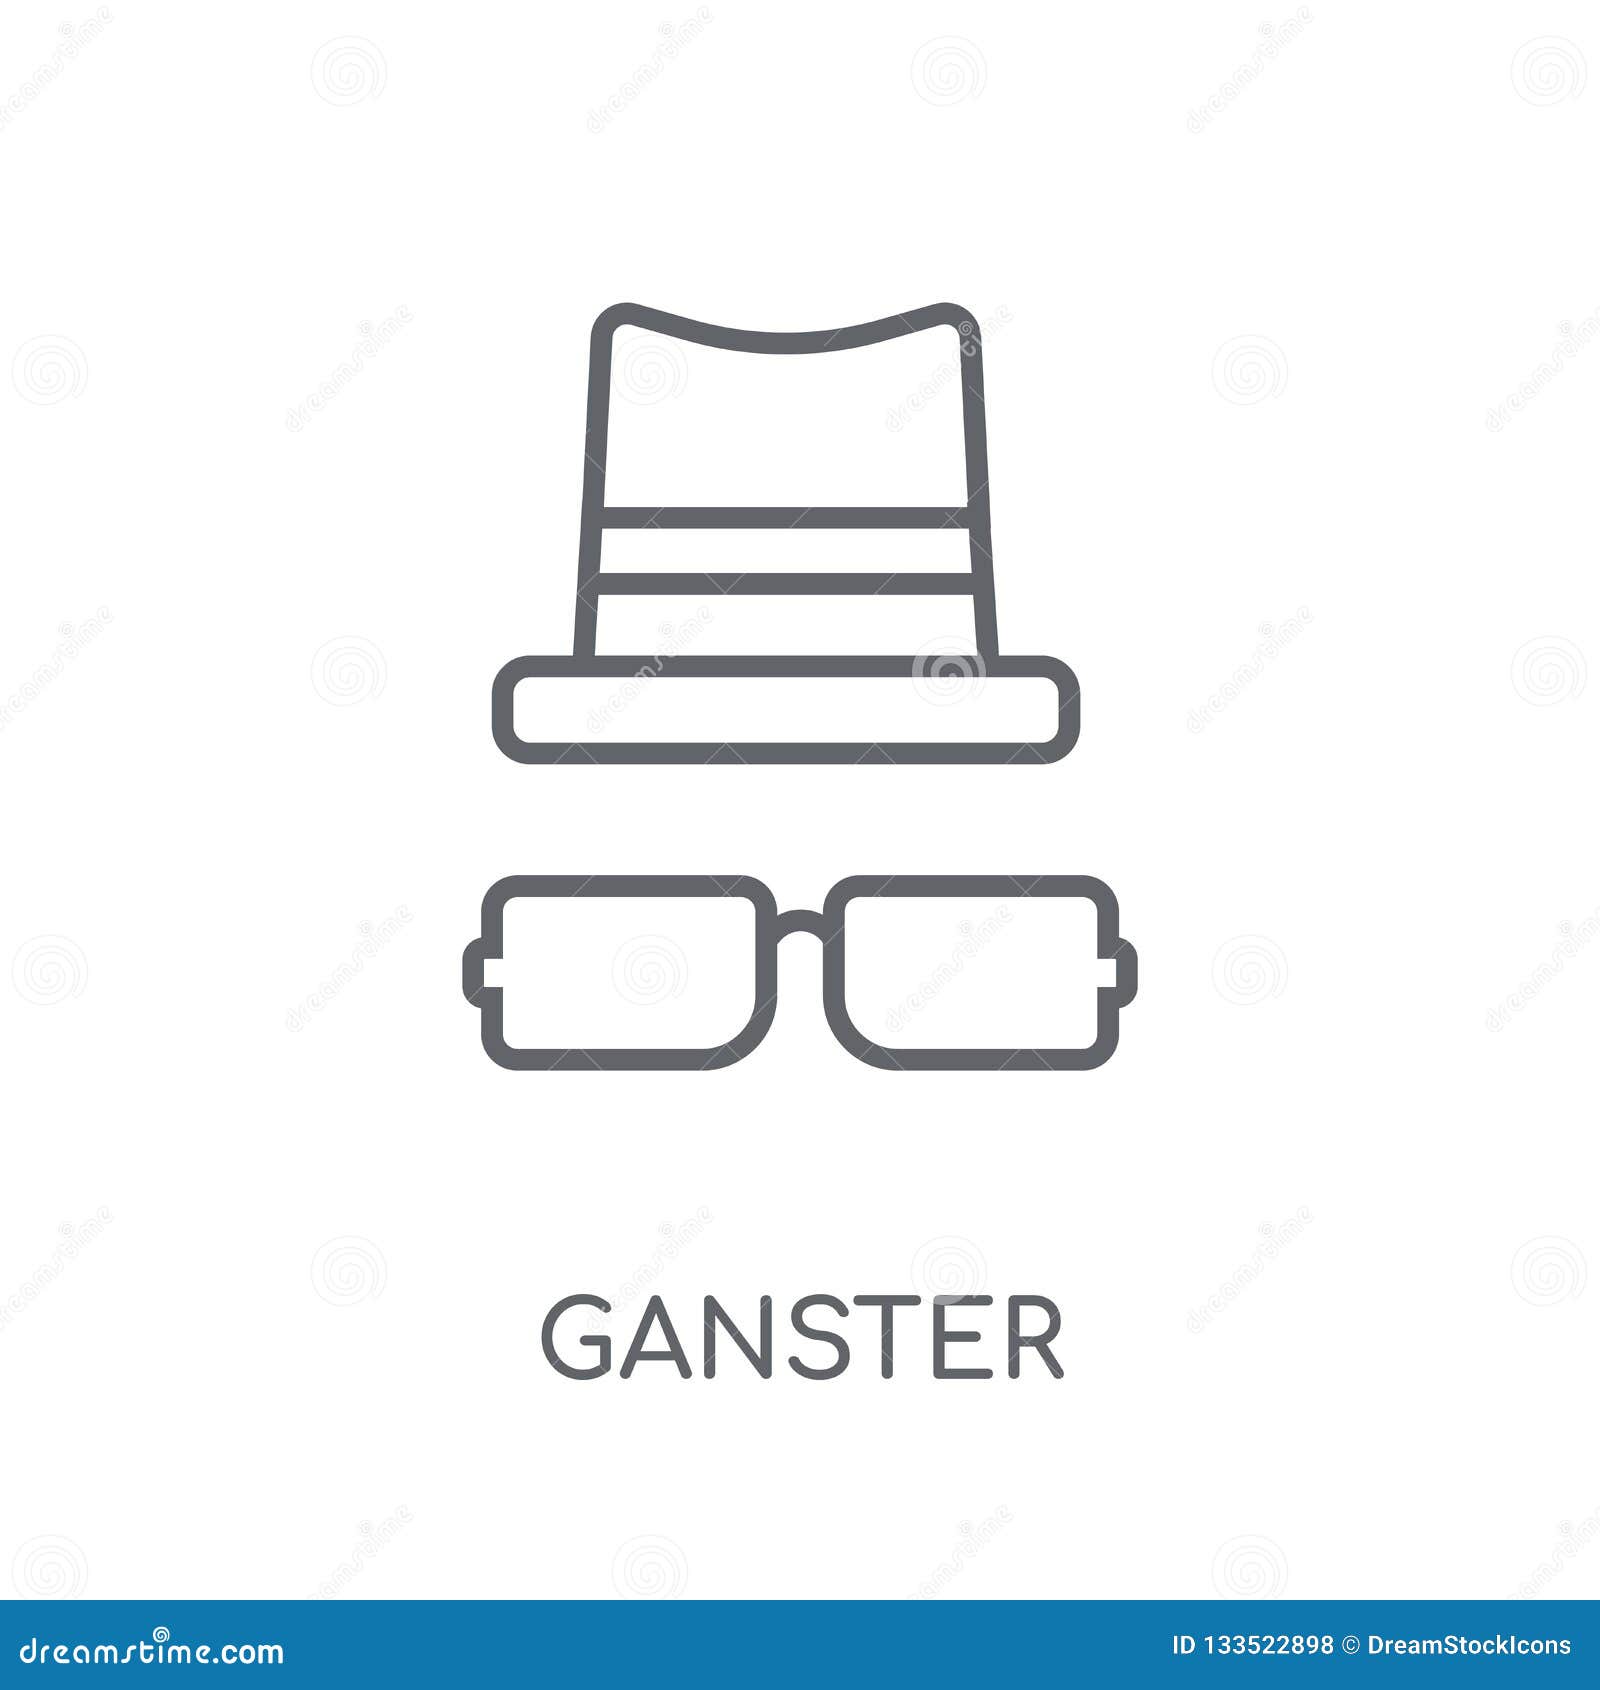 ganster linear icon. modern outline ganster logo concept on whit